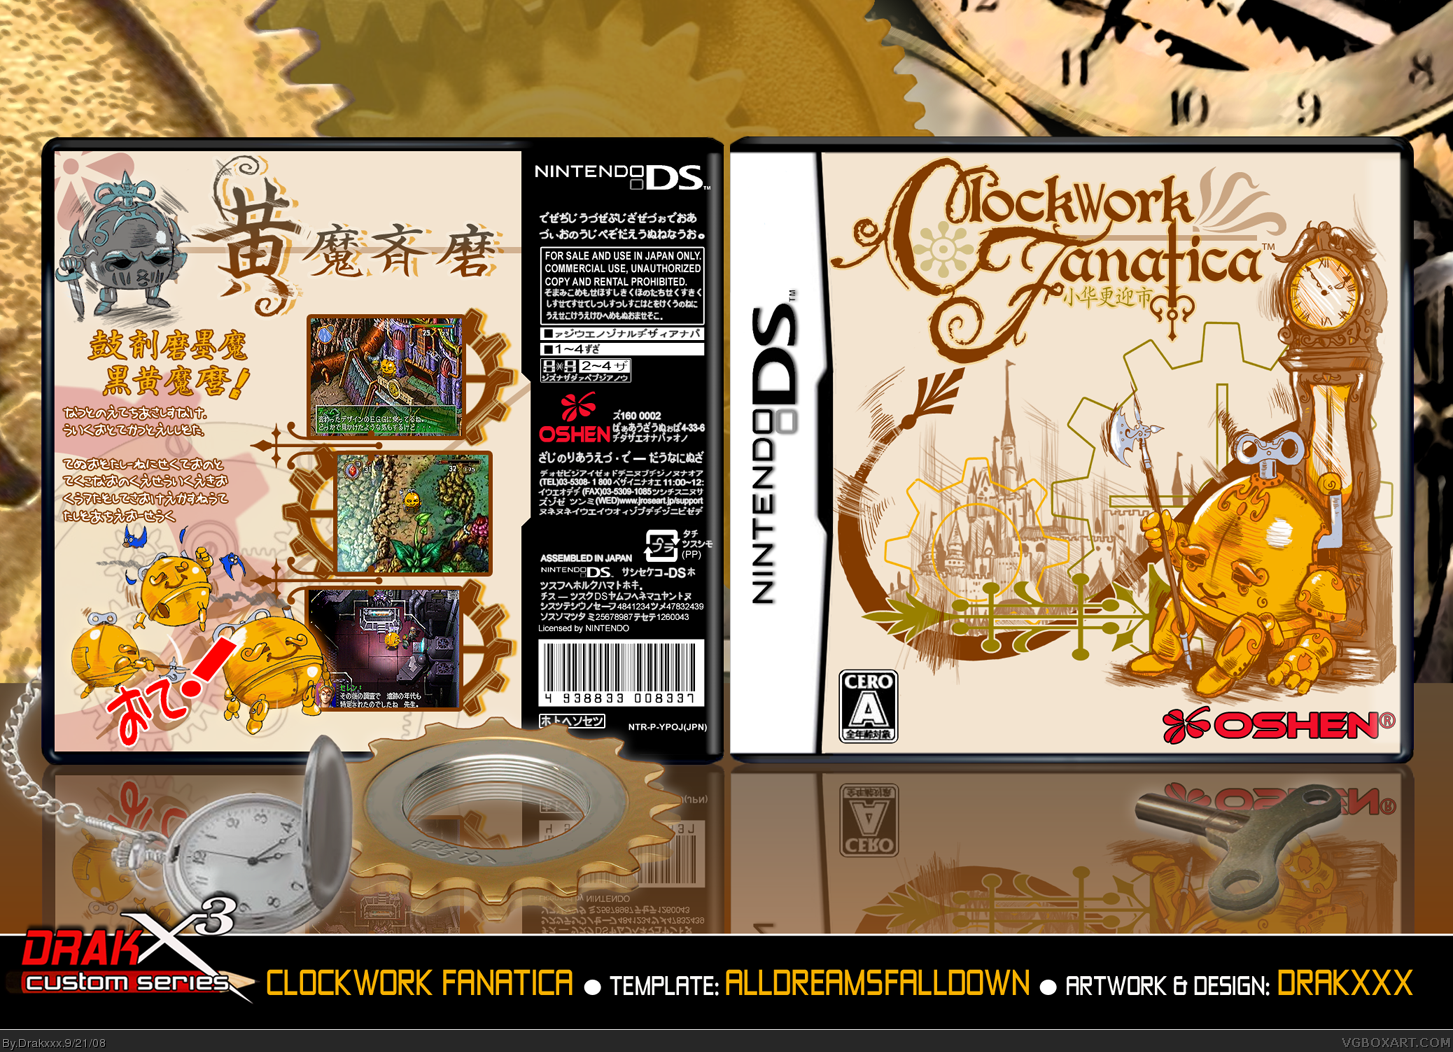 Clockwork Fanatica box cover